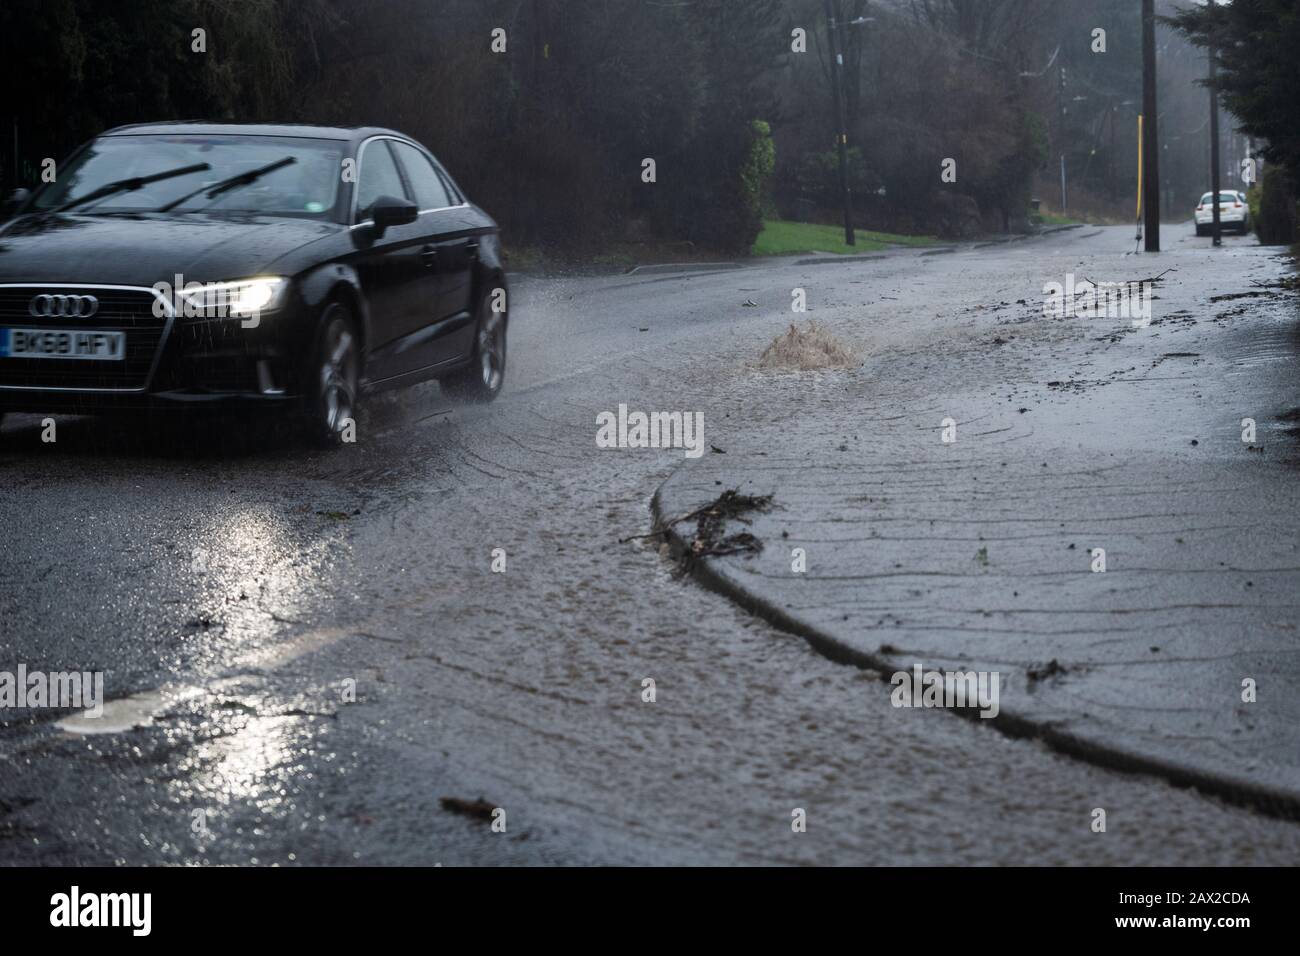 Sheffield, Royaume-Uni - 9 février 2020: Les routes inondées d'eau se sont dégagées lors de fortes précipitations dans la tempête Ciara, février 2020 Banque D'Images